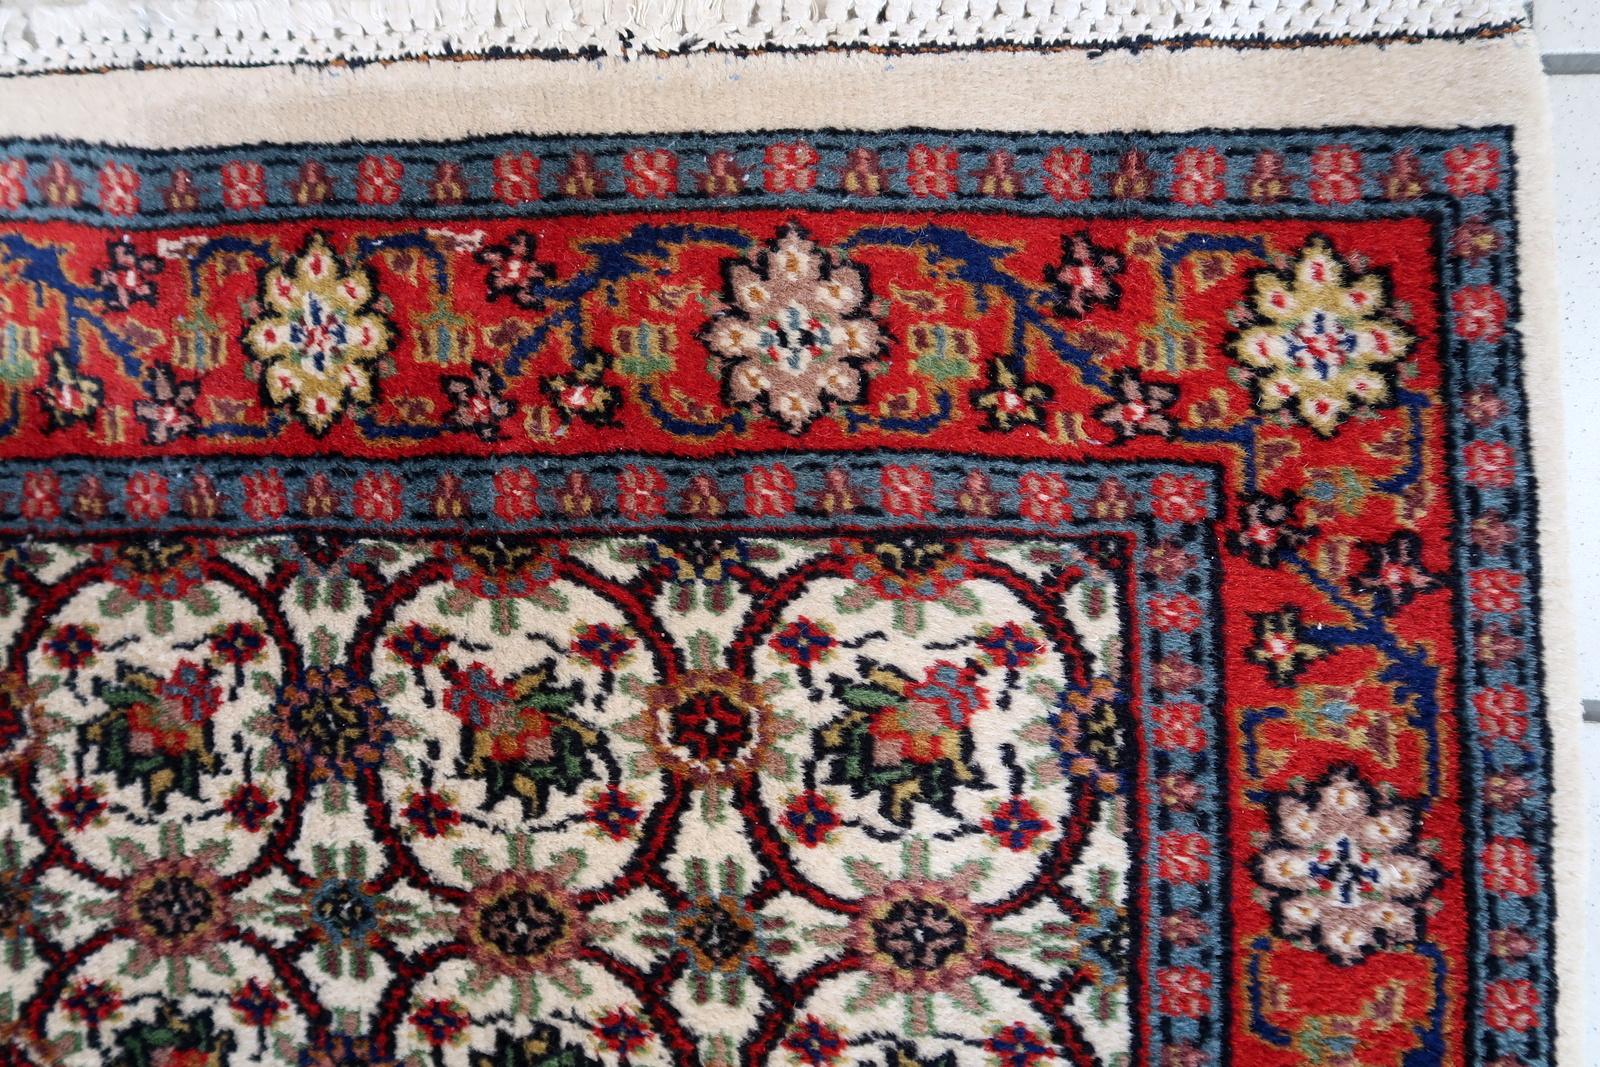 Handgefertigter indischer Mahal-Teppich im Allover-Design. Der Teppich stammt aus dem Ende des 20. Jahrhunderts, er ist in gutem Originalzustand. Der Teppich ist in Indien hergestellt worden, aber mit persischem Mahal-Design.

-Zustand: original